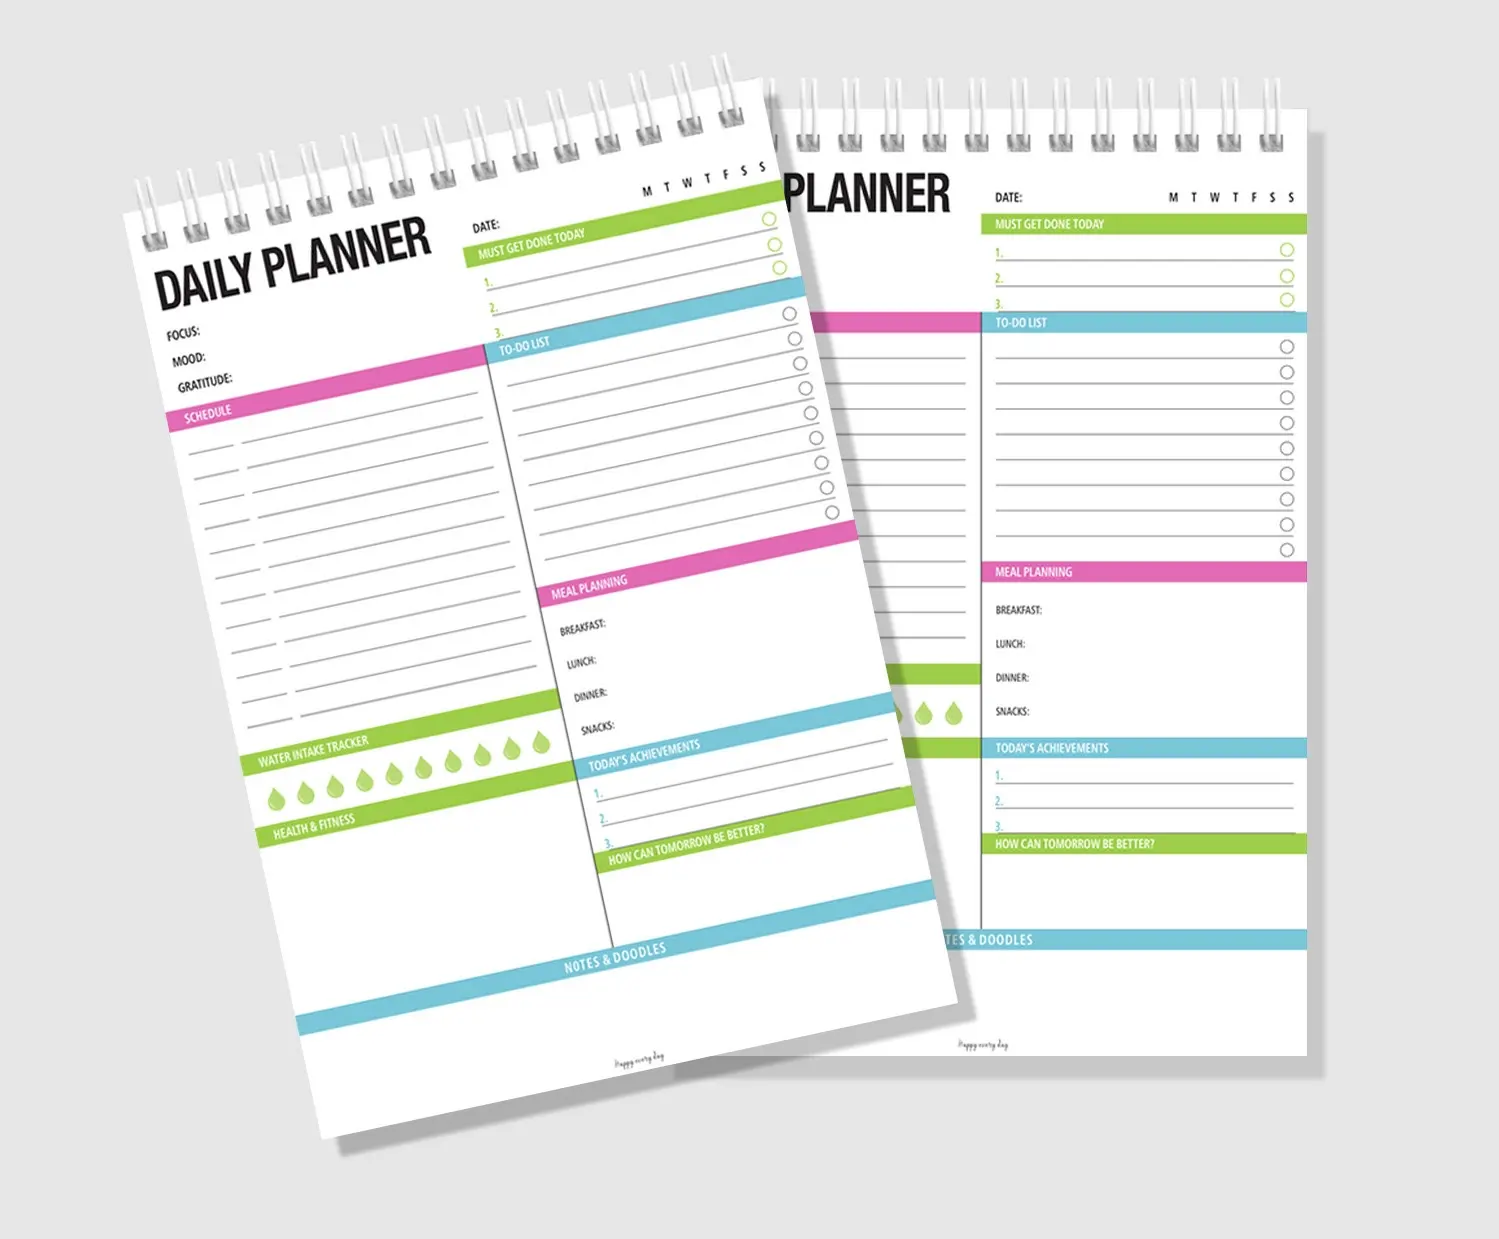 Papel de alta qualidade para fazer lista de coisas, agenda diária e semanal, memorando, almofadas em espiral, papelaria, cadernos personalizados para planejar